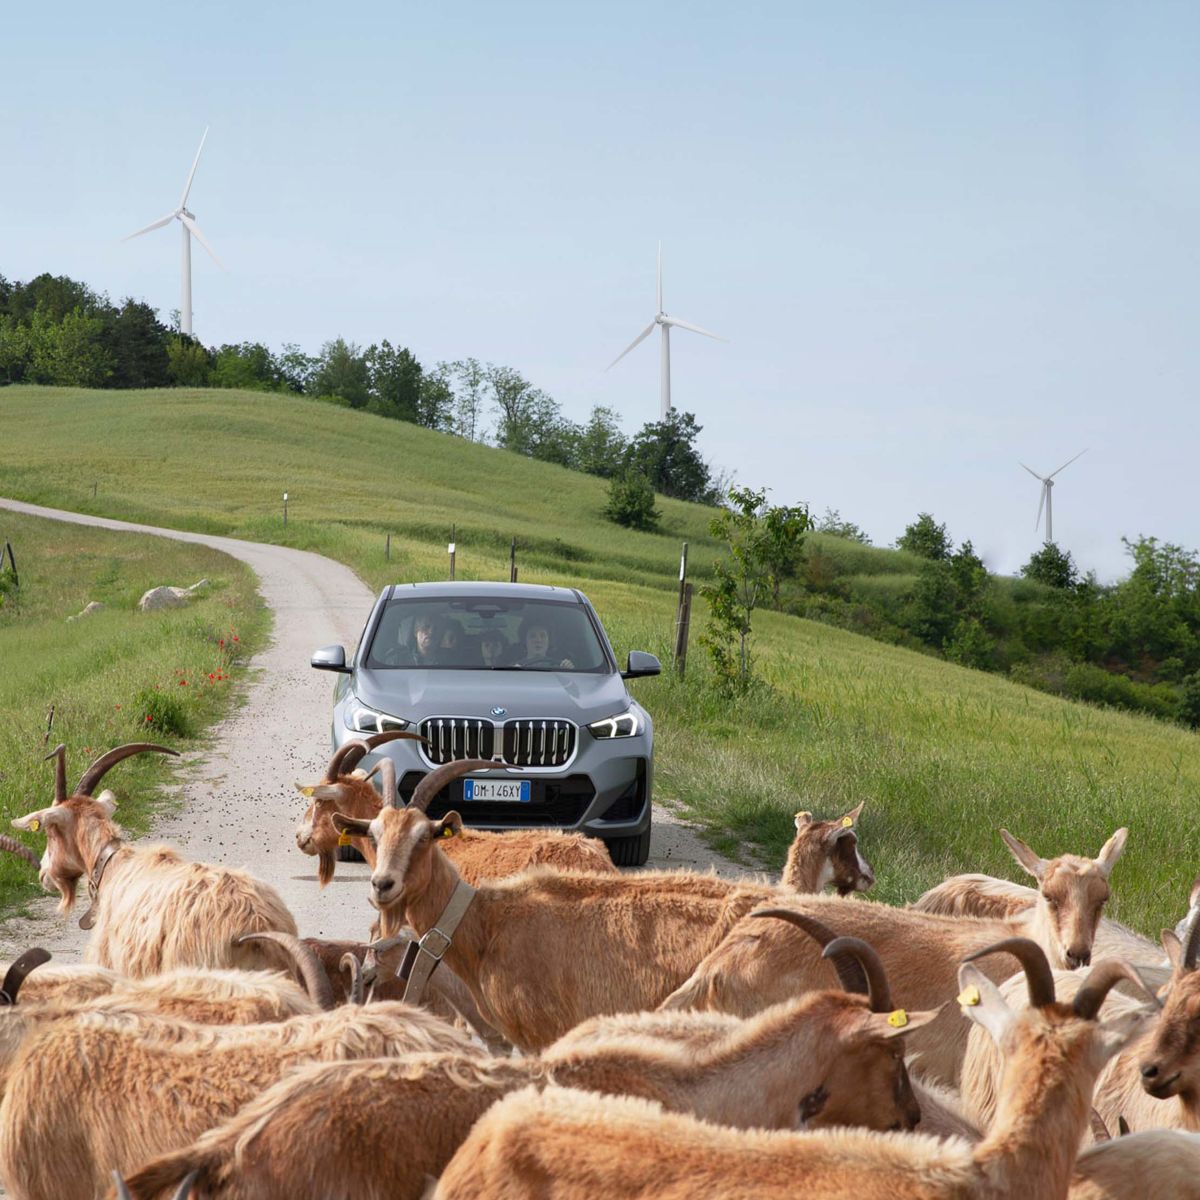 Un paesaggio collinare con pale eoliche sullo sfondo, in primo piano un’auto viene bloccata da un gregge di capre sulla strada. 